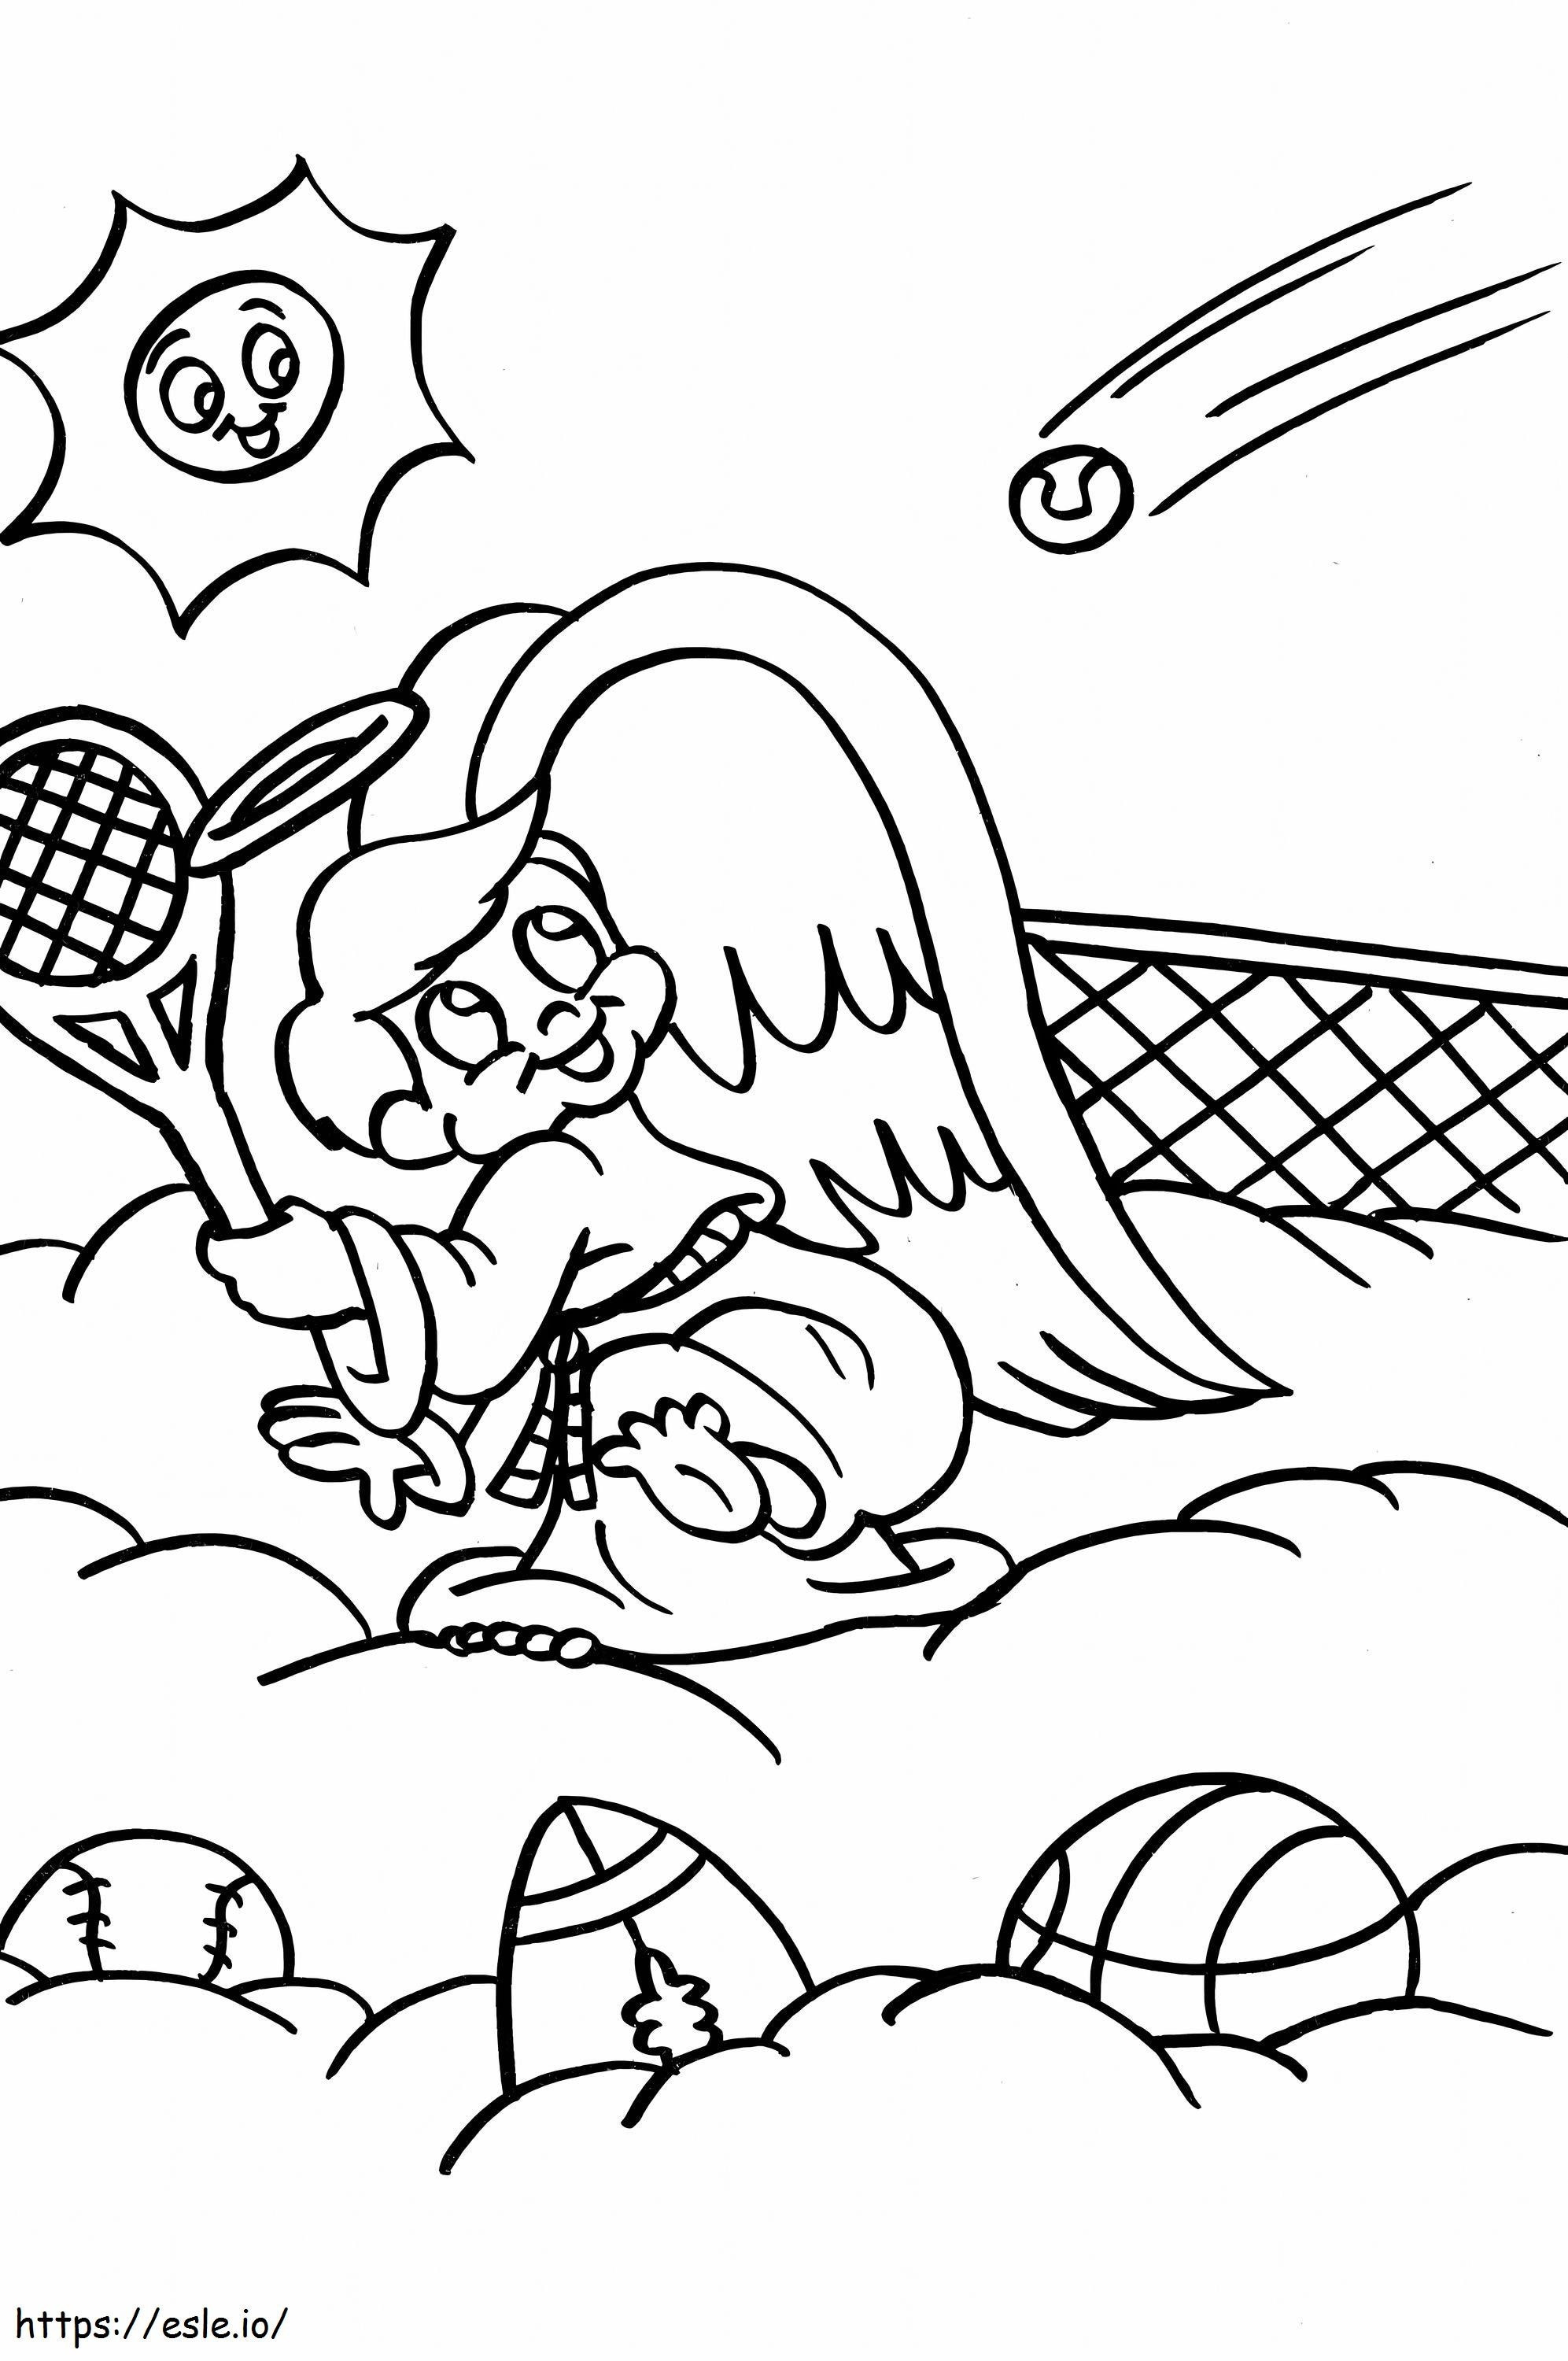 Coloriage Ange jouer au tennis à imprimer dessin